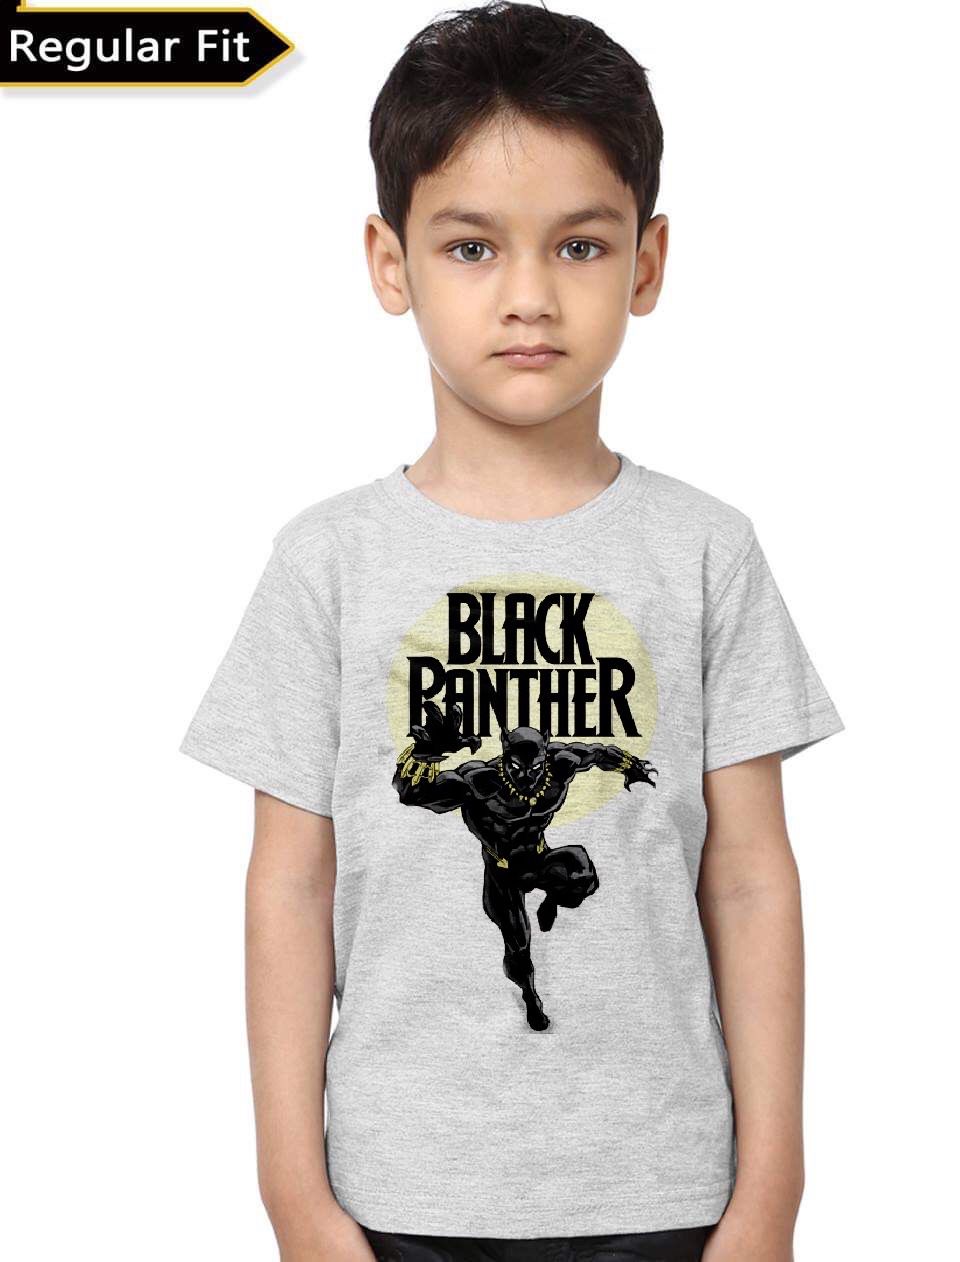 Black Panther Kids T-Shirt - Swag Shirts